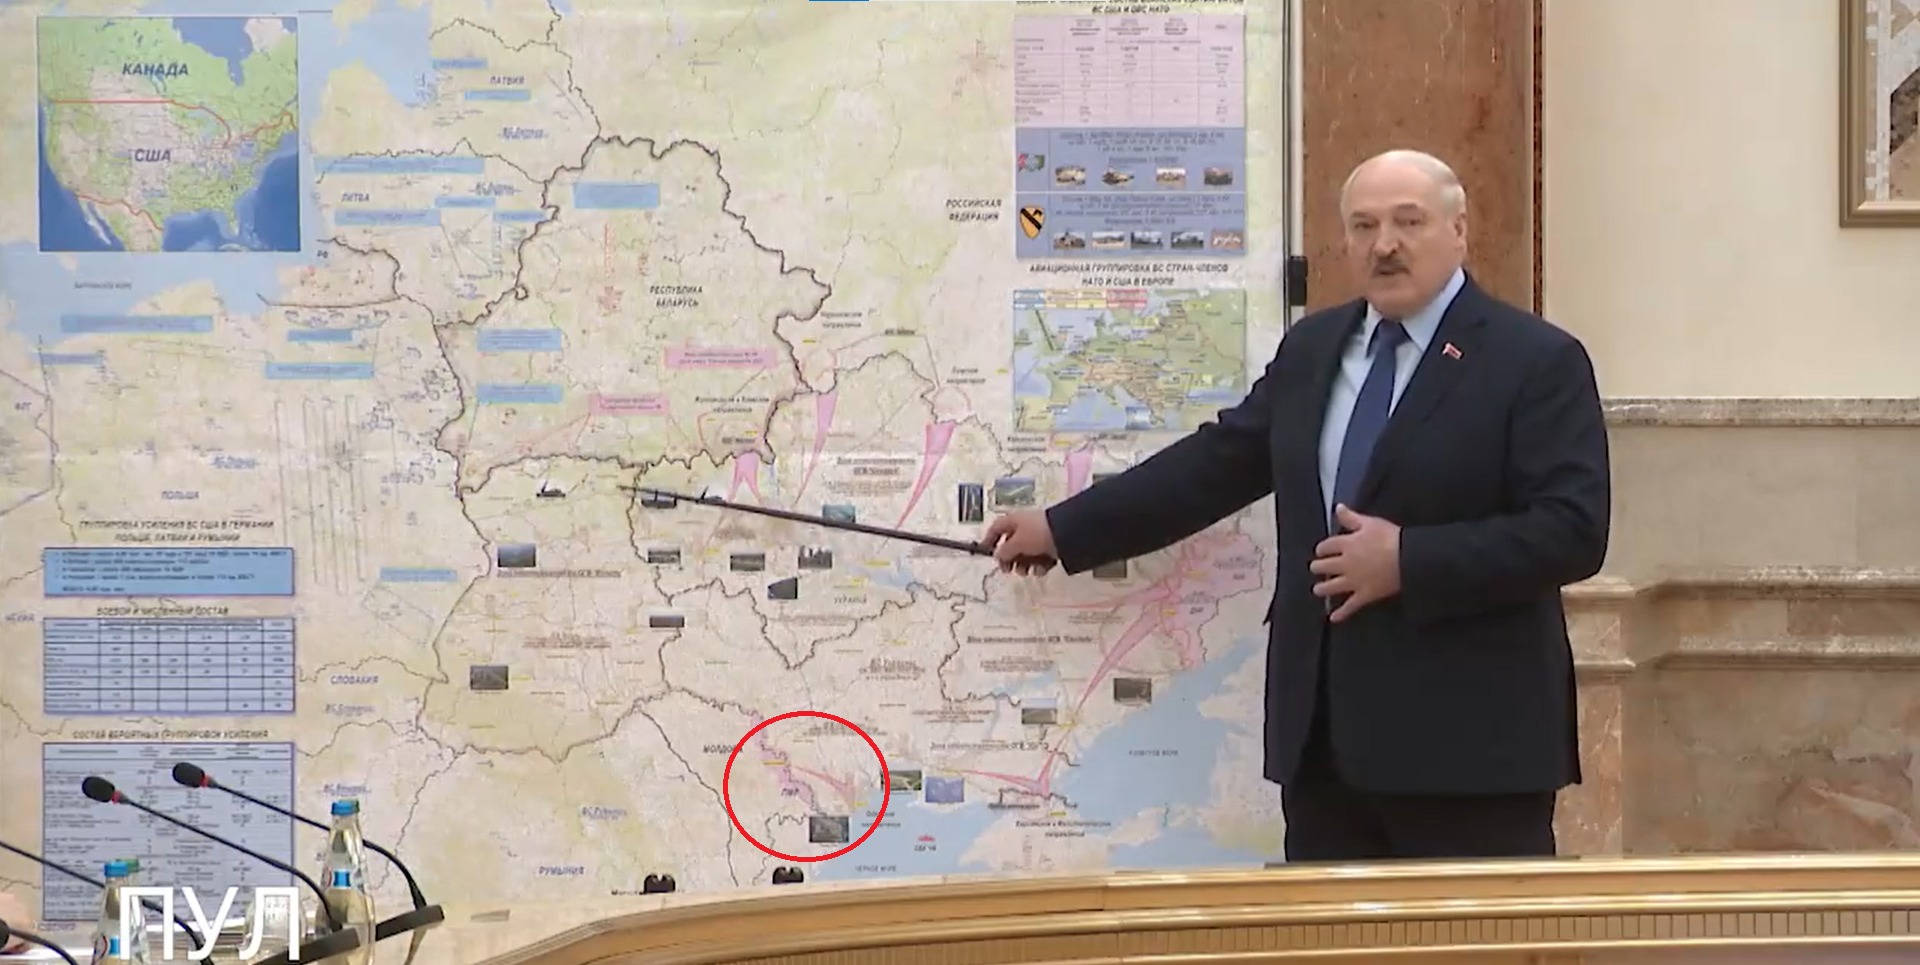 Și Moldova ocupată de ruși? Harta publicată de dictatorul Lukașenko 1